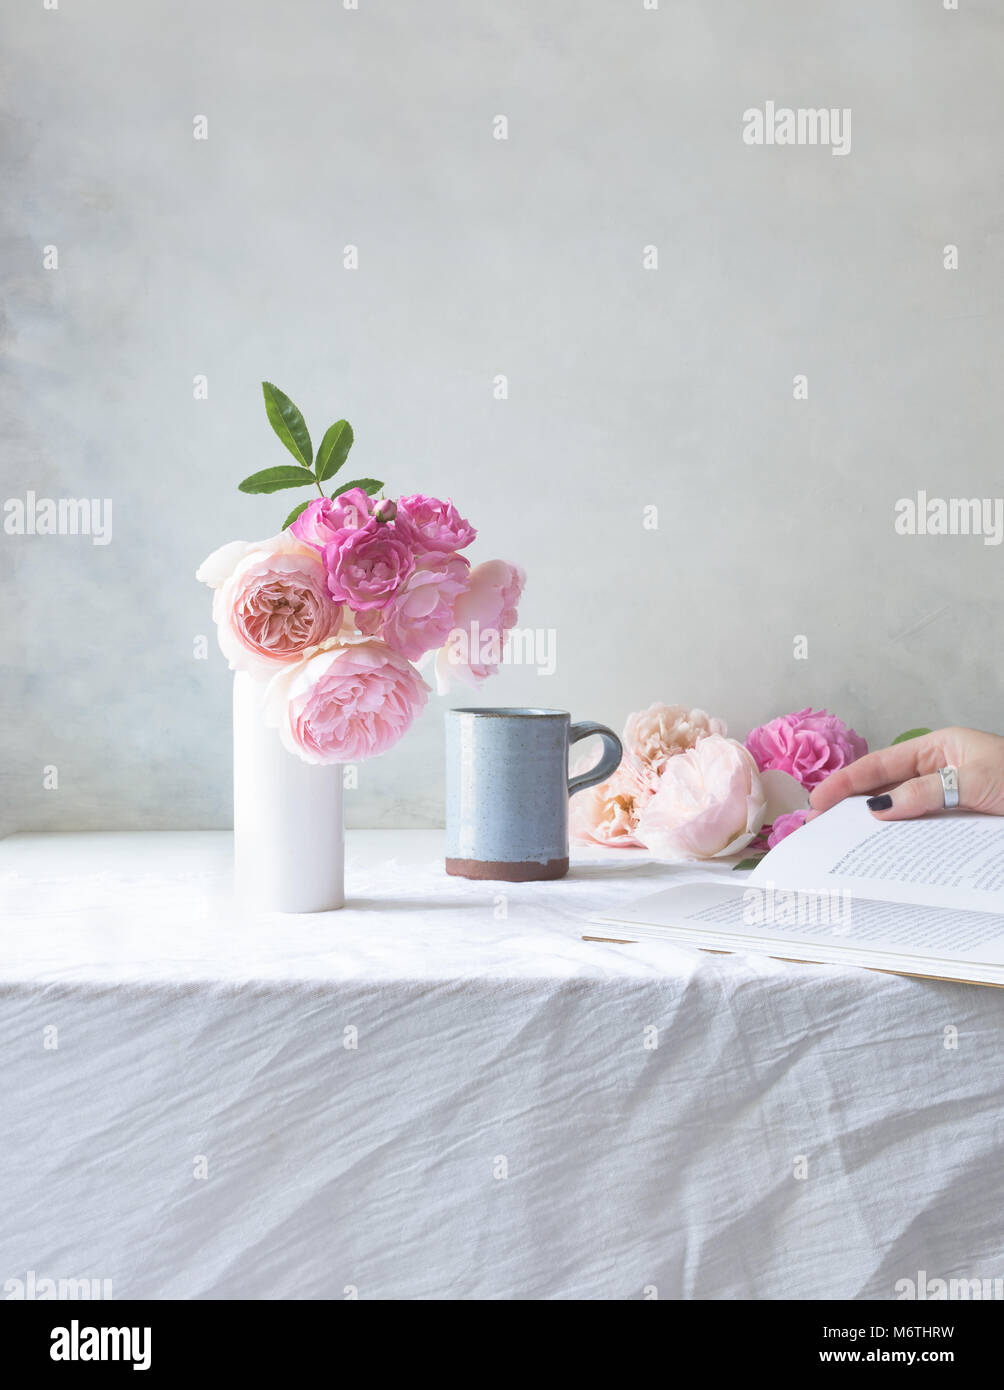 Escena interior con David Austin rosas rosas en un jarrón blanco sobre tablle, con taza y la mano en el fondo la celebración de libro Foto de stock